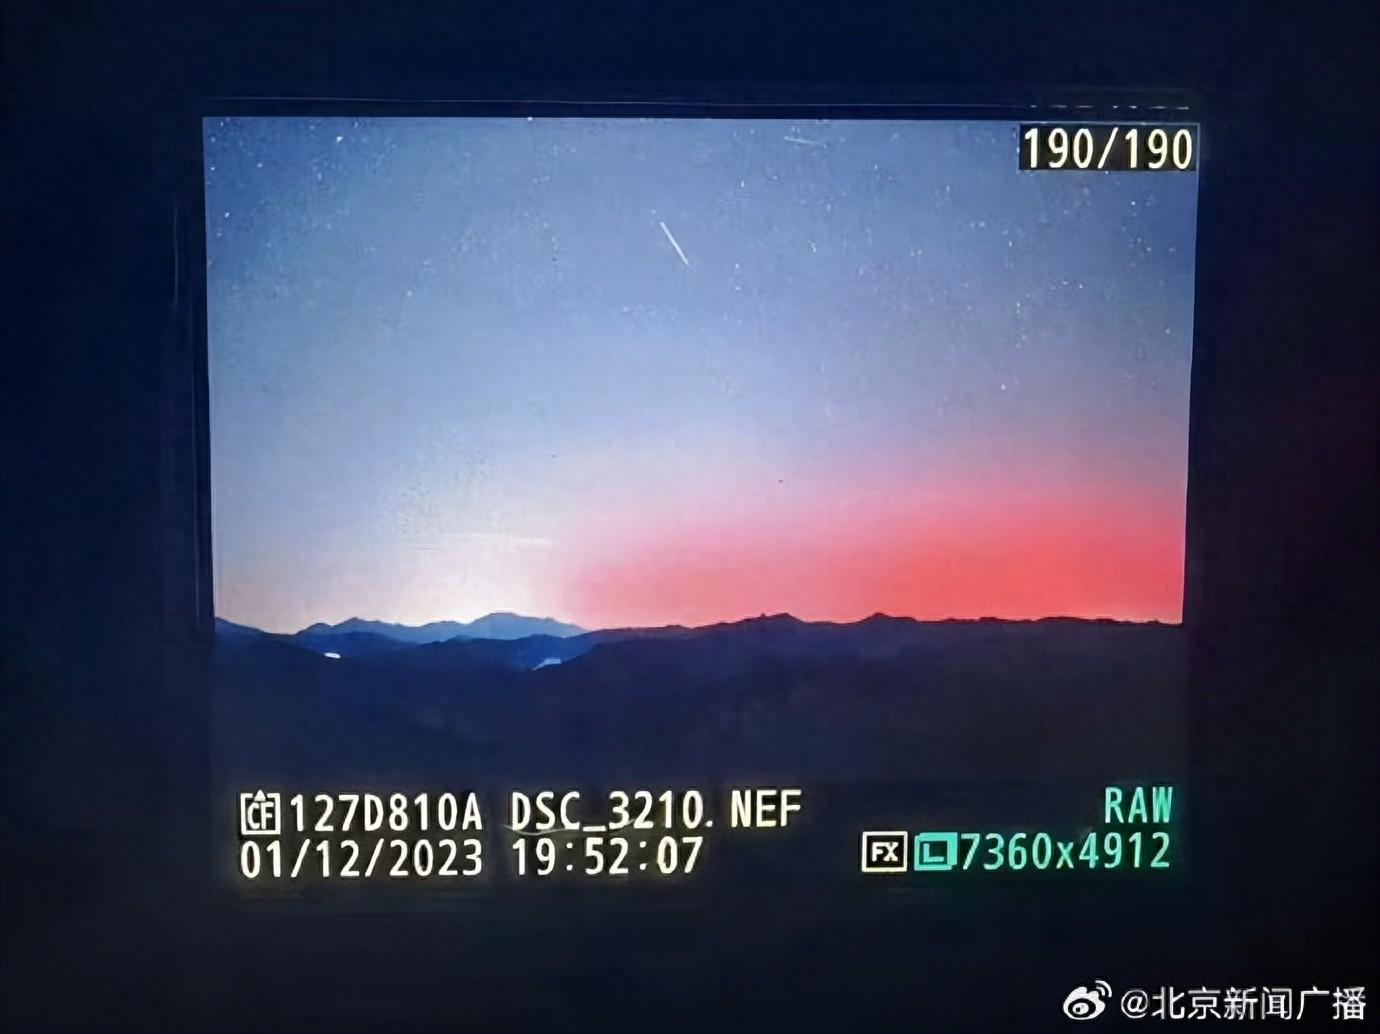 北京竟然也拍到北極光   史上第二次影像記錄